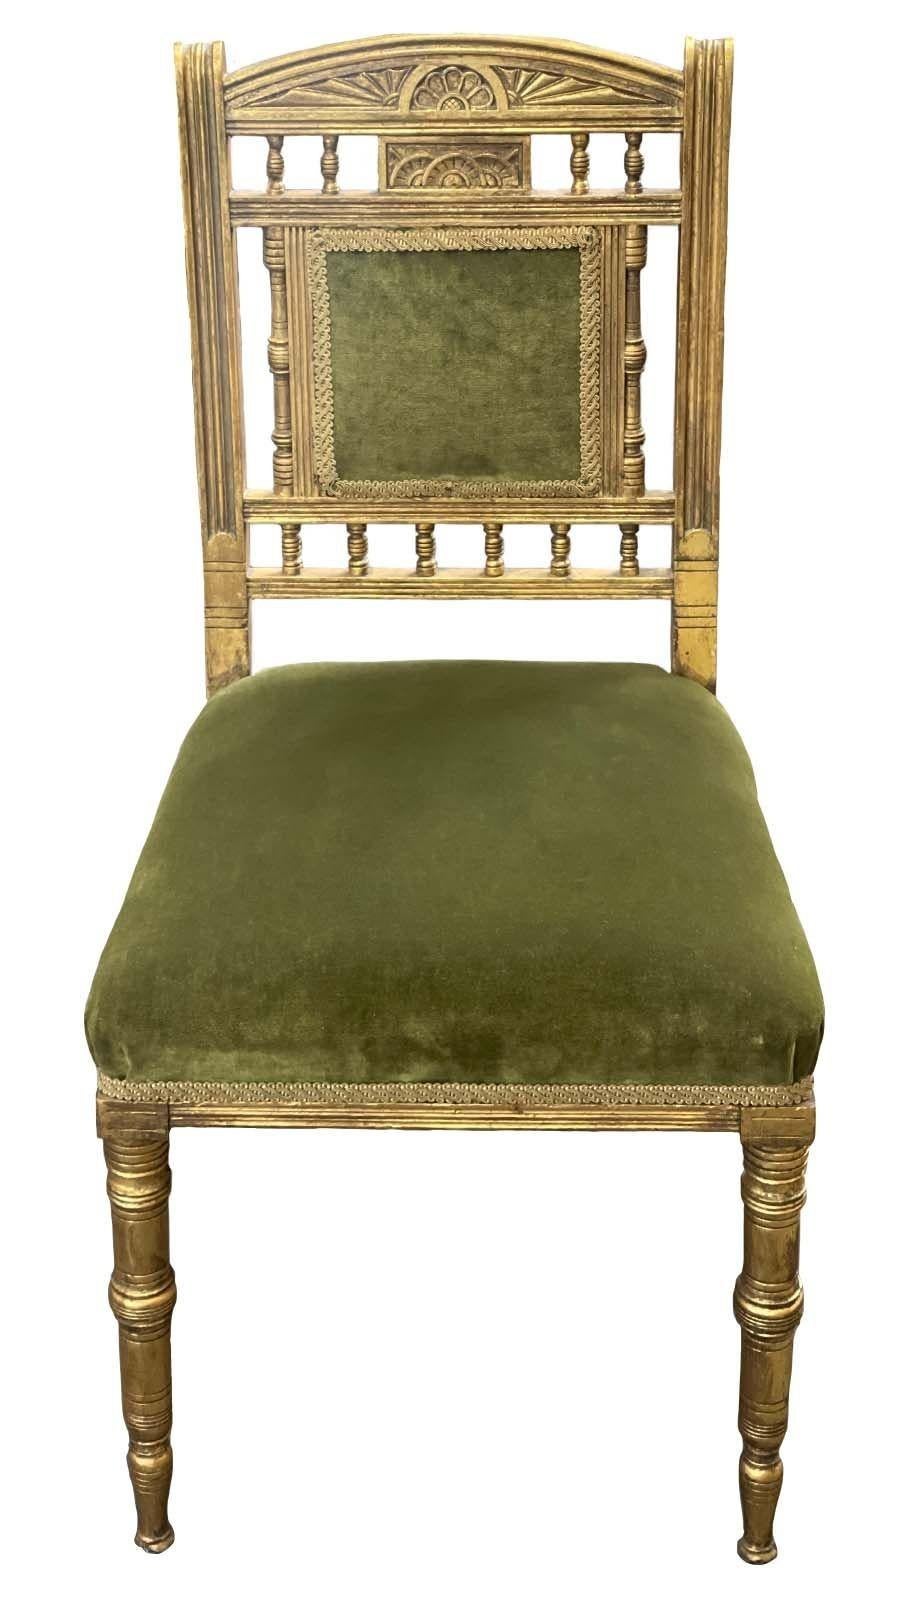 Satz von fünf amerikanischen Stühlen aus vergoldetem Holz und grünem Samt. Ca. 1920er Jahre
Abmessungen:
35 